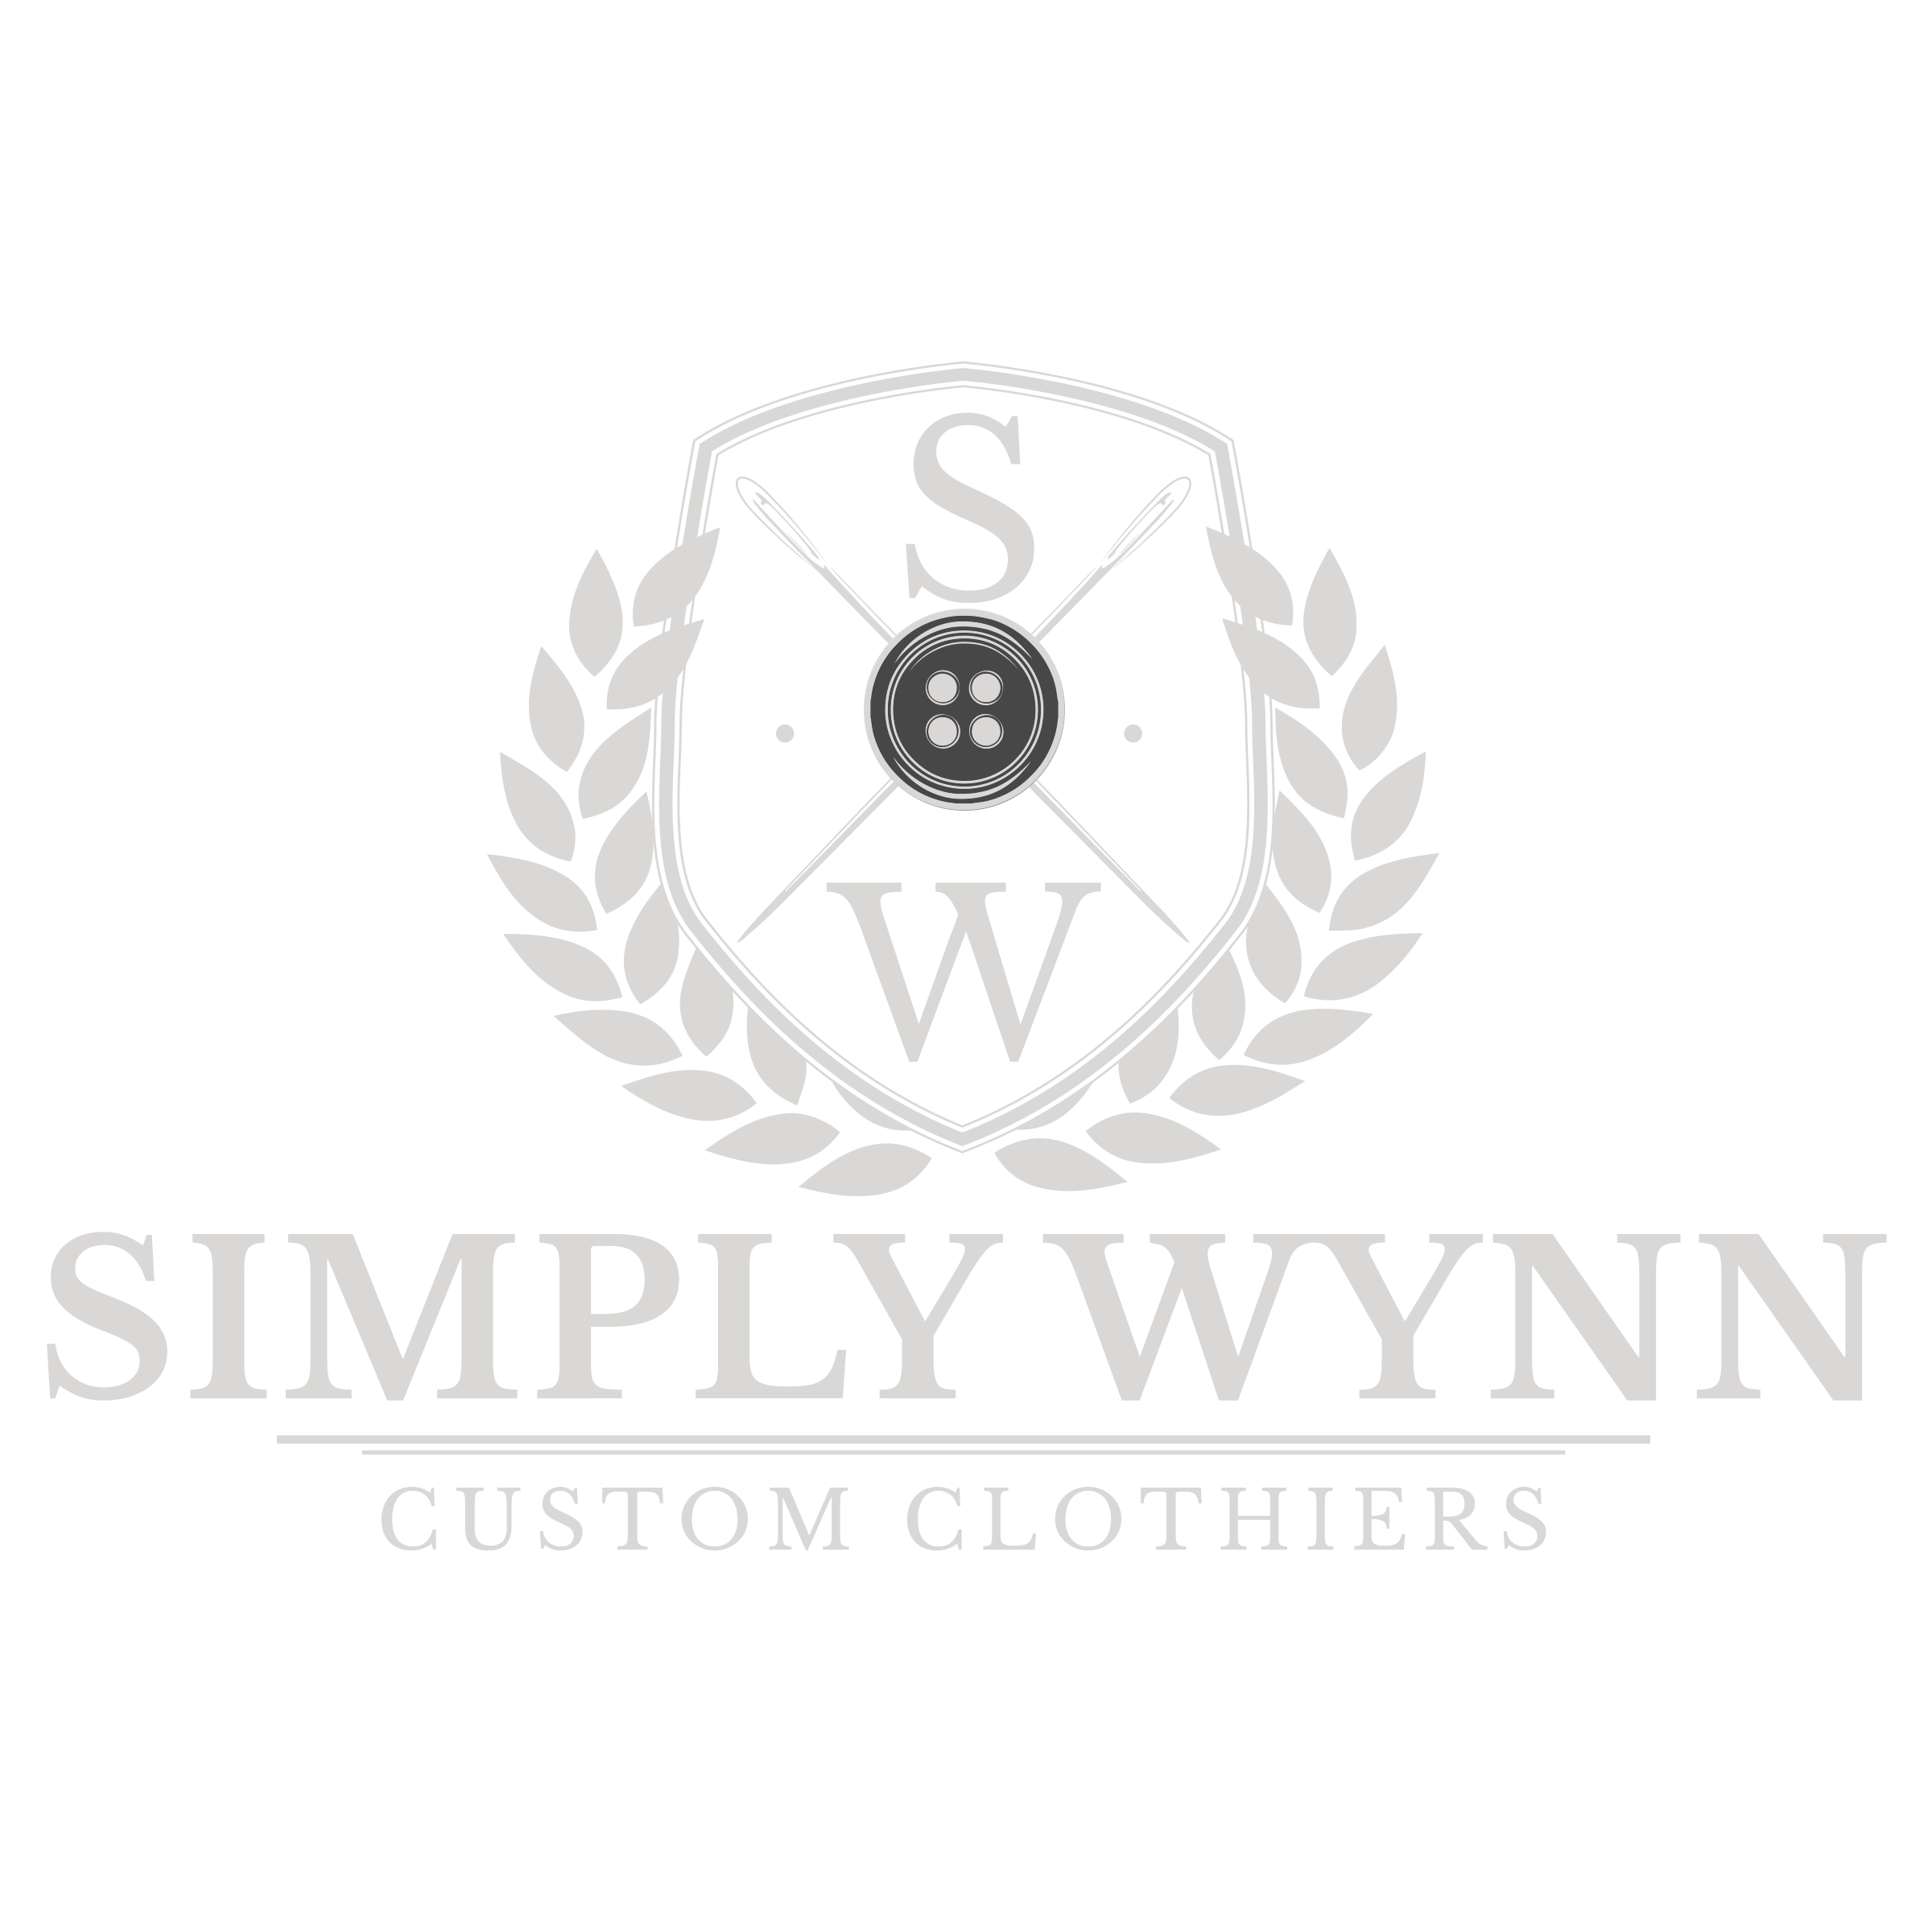 Simply Wynn Custom Clothiers